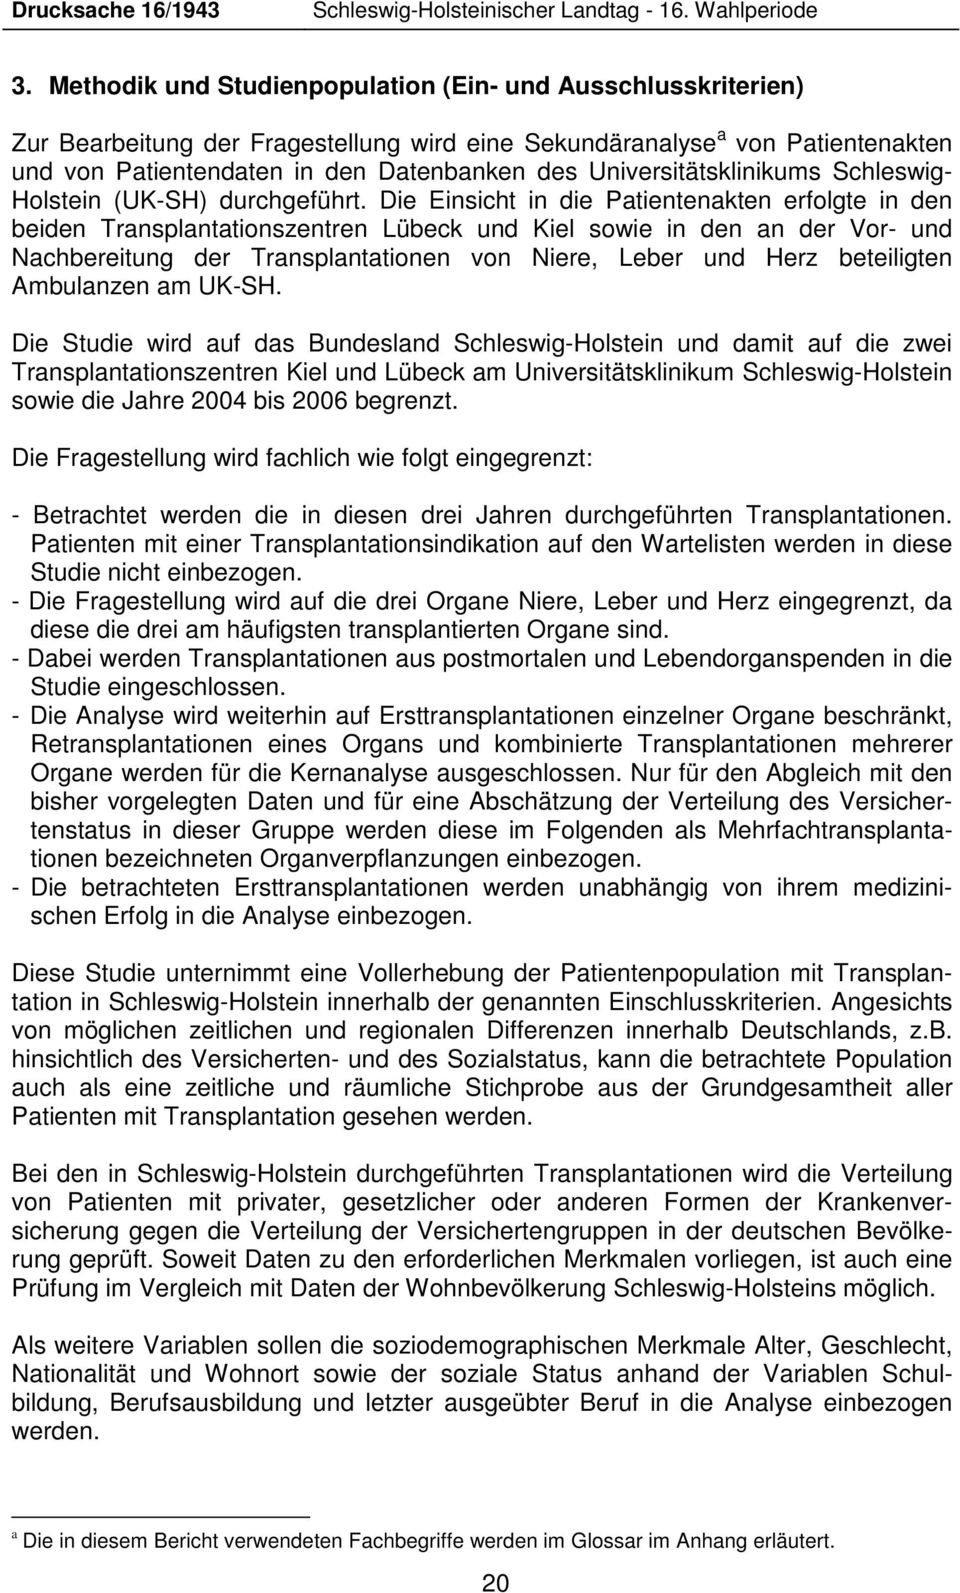 Die Einsicht in die Patientenakten erfolgte in den beiden Transplantationszentren Lübeck und Kiel sowie in den an der Vor- und Nachbereitung der Transplantationen von Niere, Leber und Herz